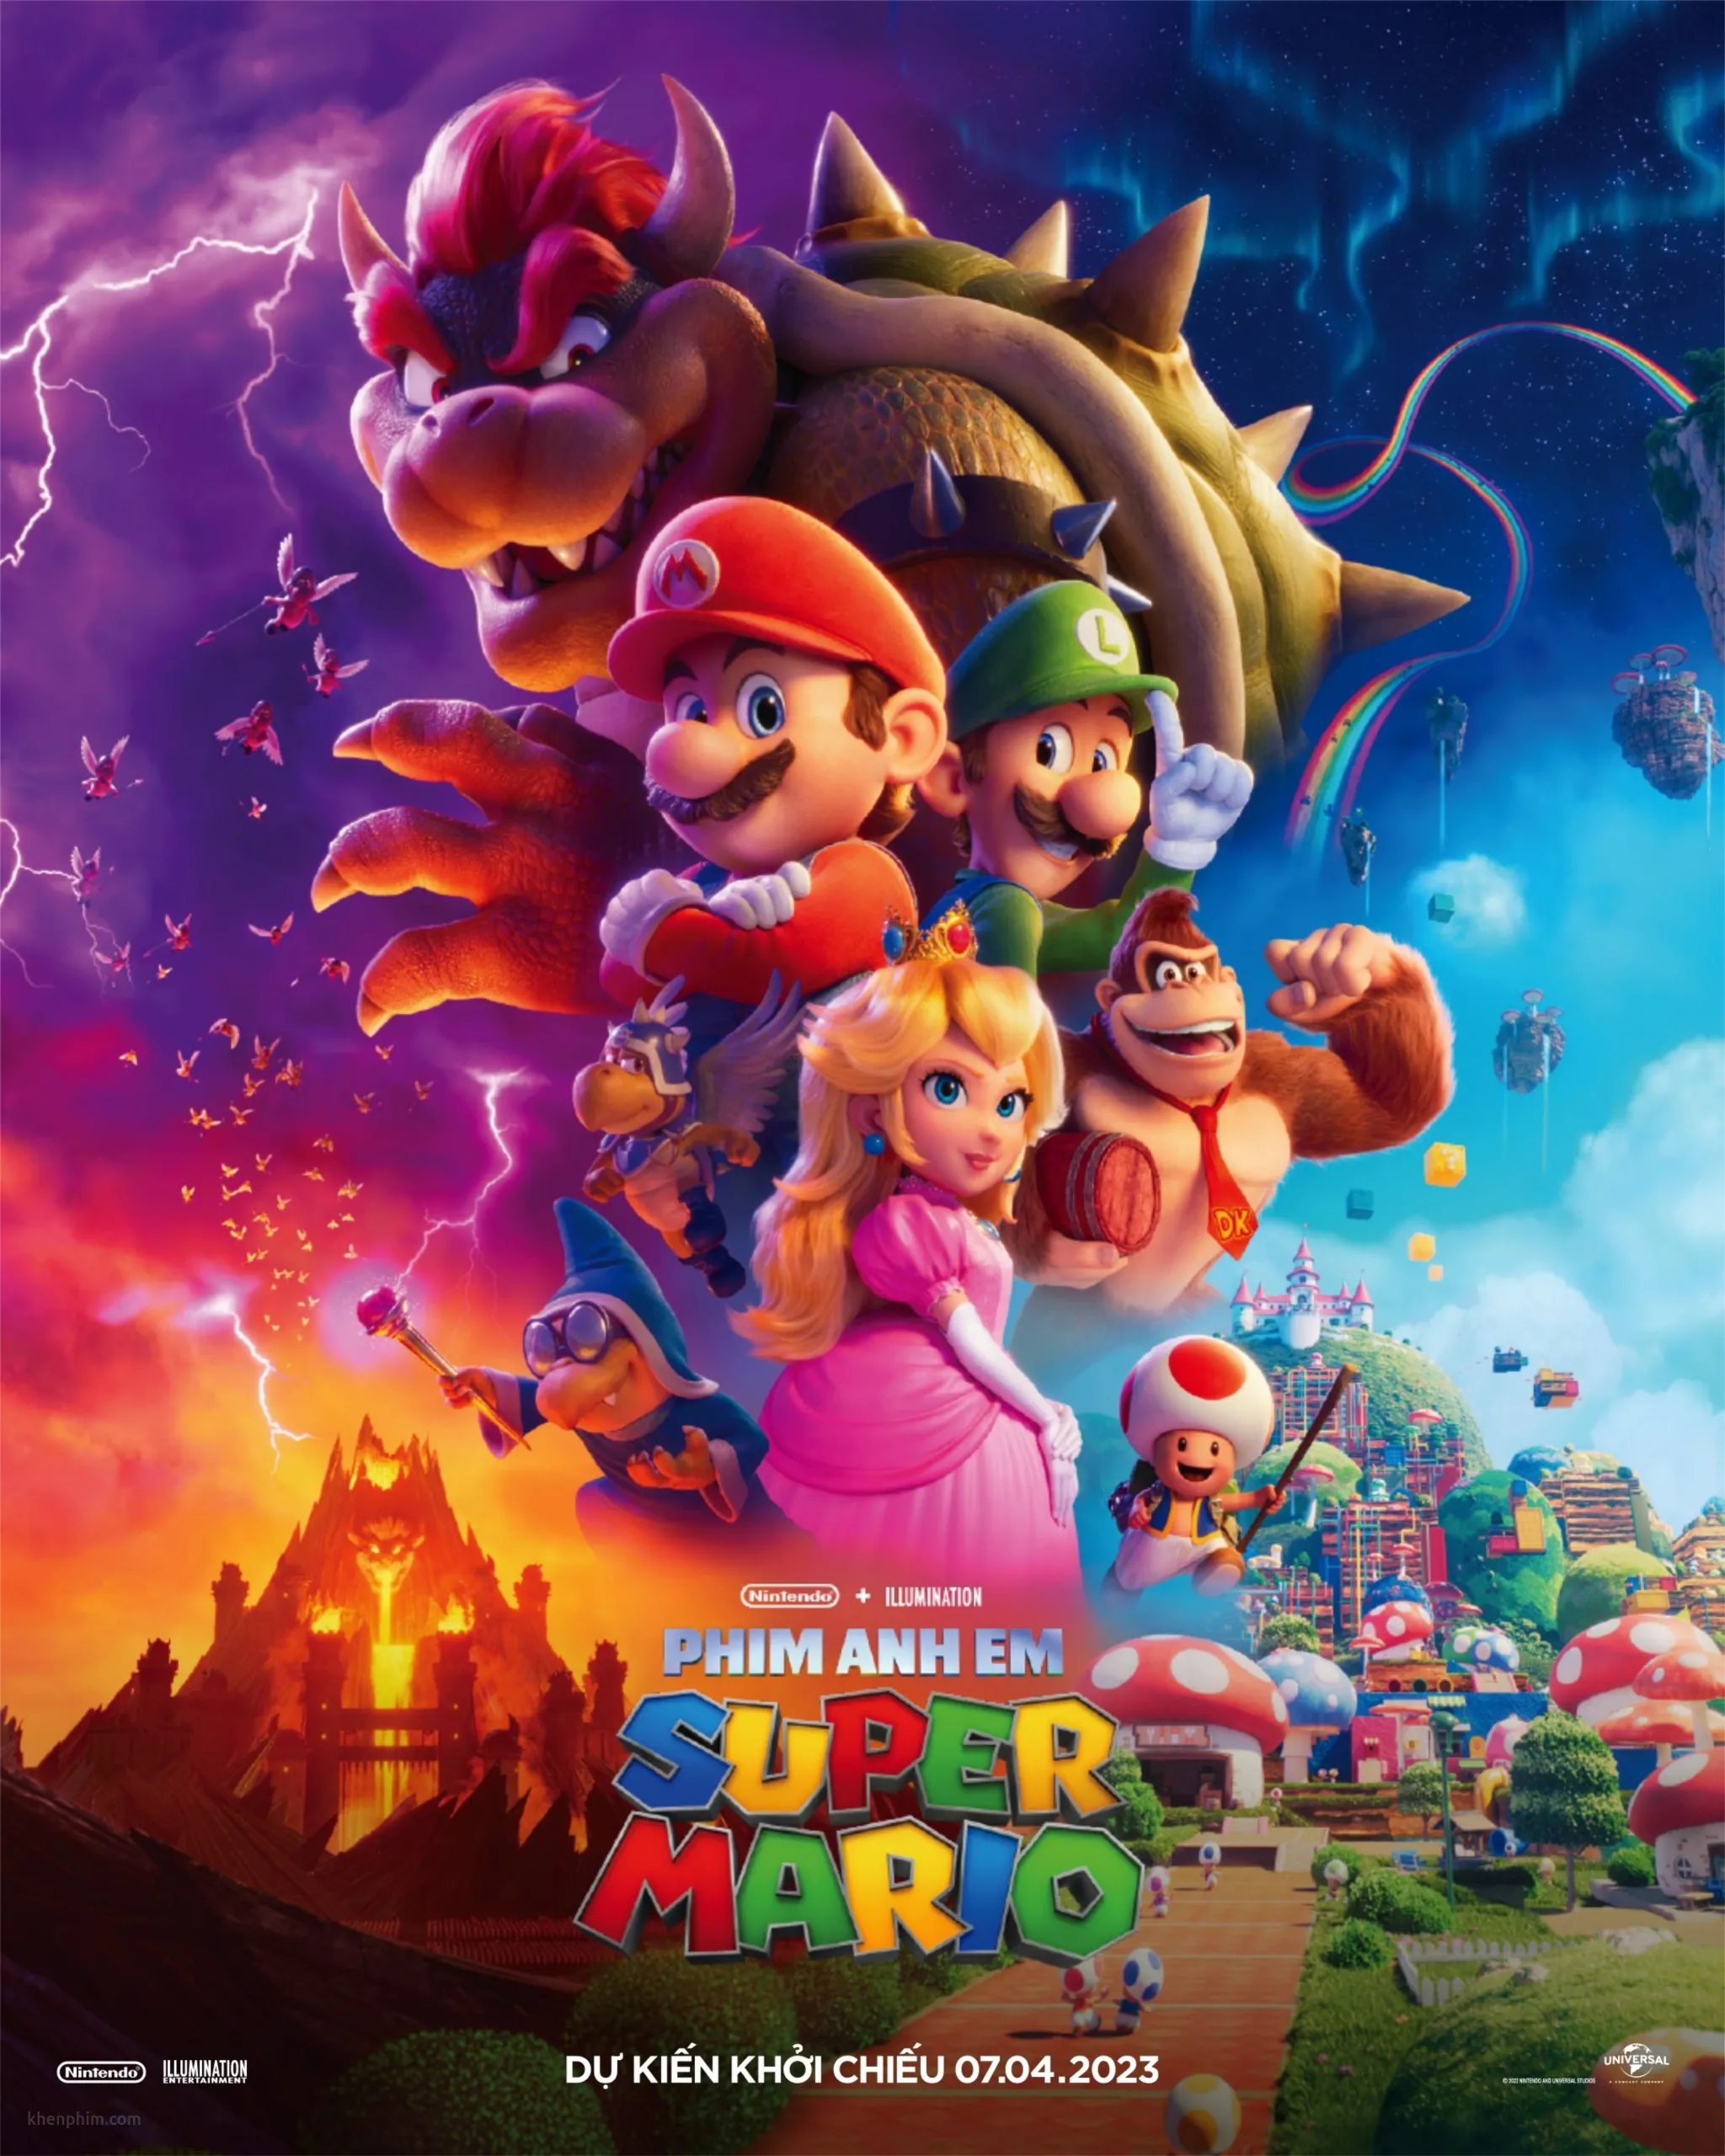 Poster của Phim Anh Em Super Mario